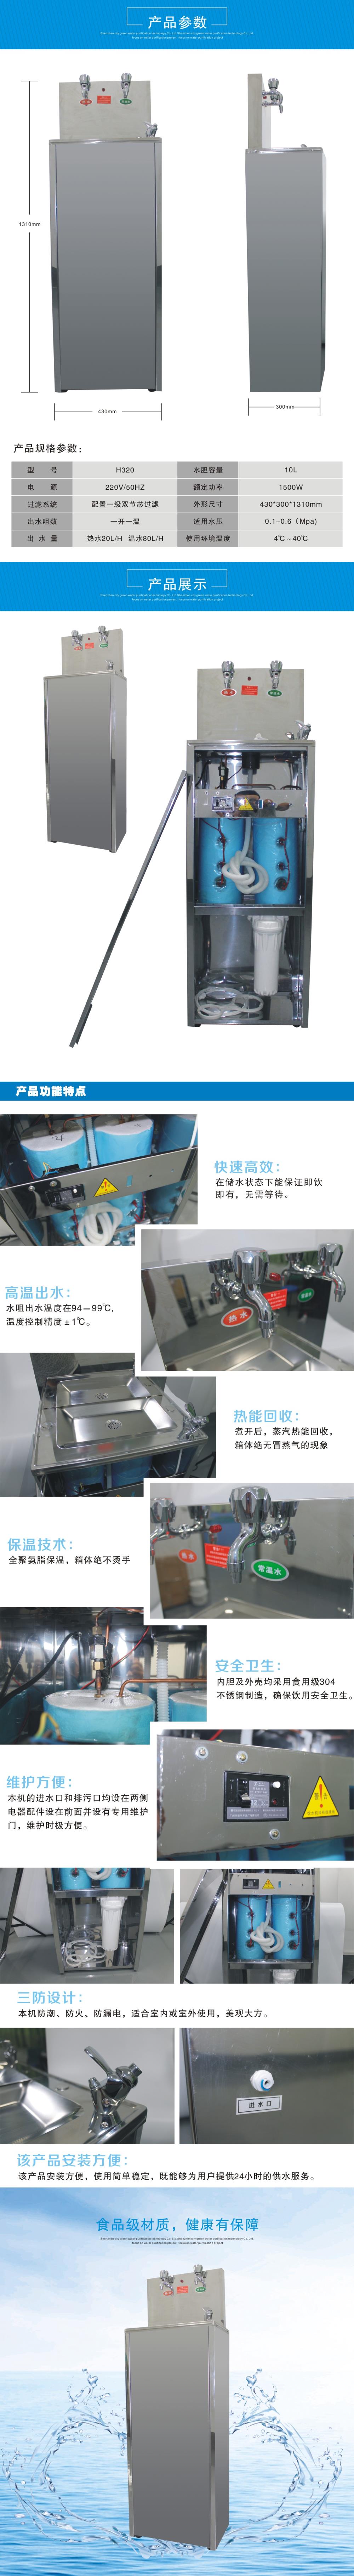 不锈钢自动饮水机H320产品规格参数详情